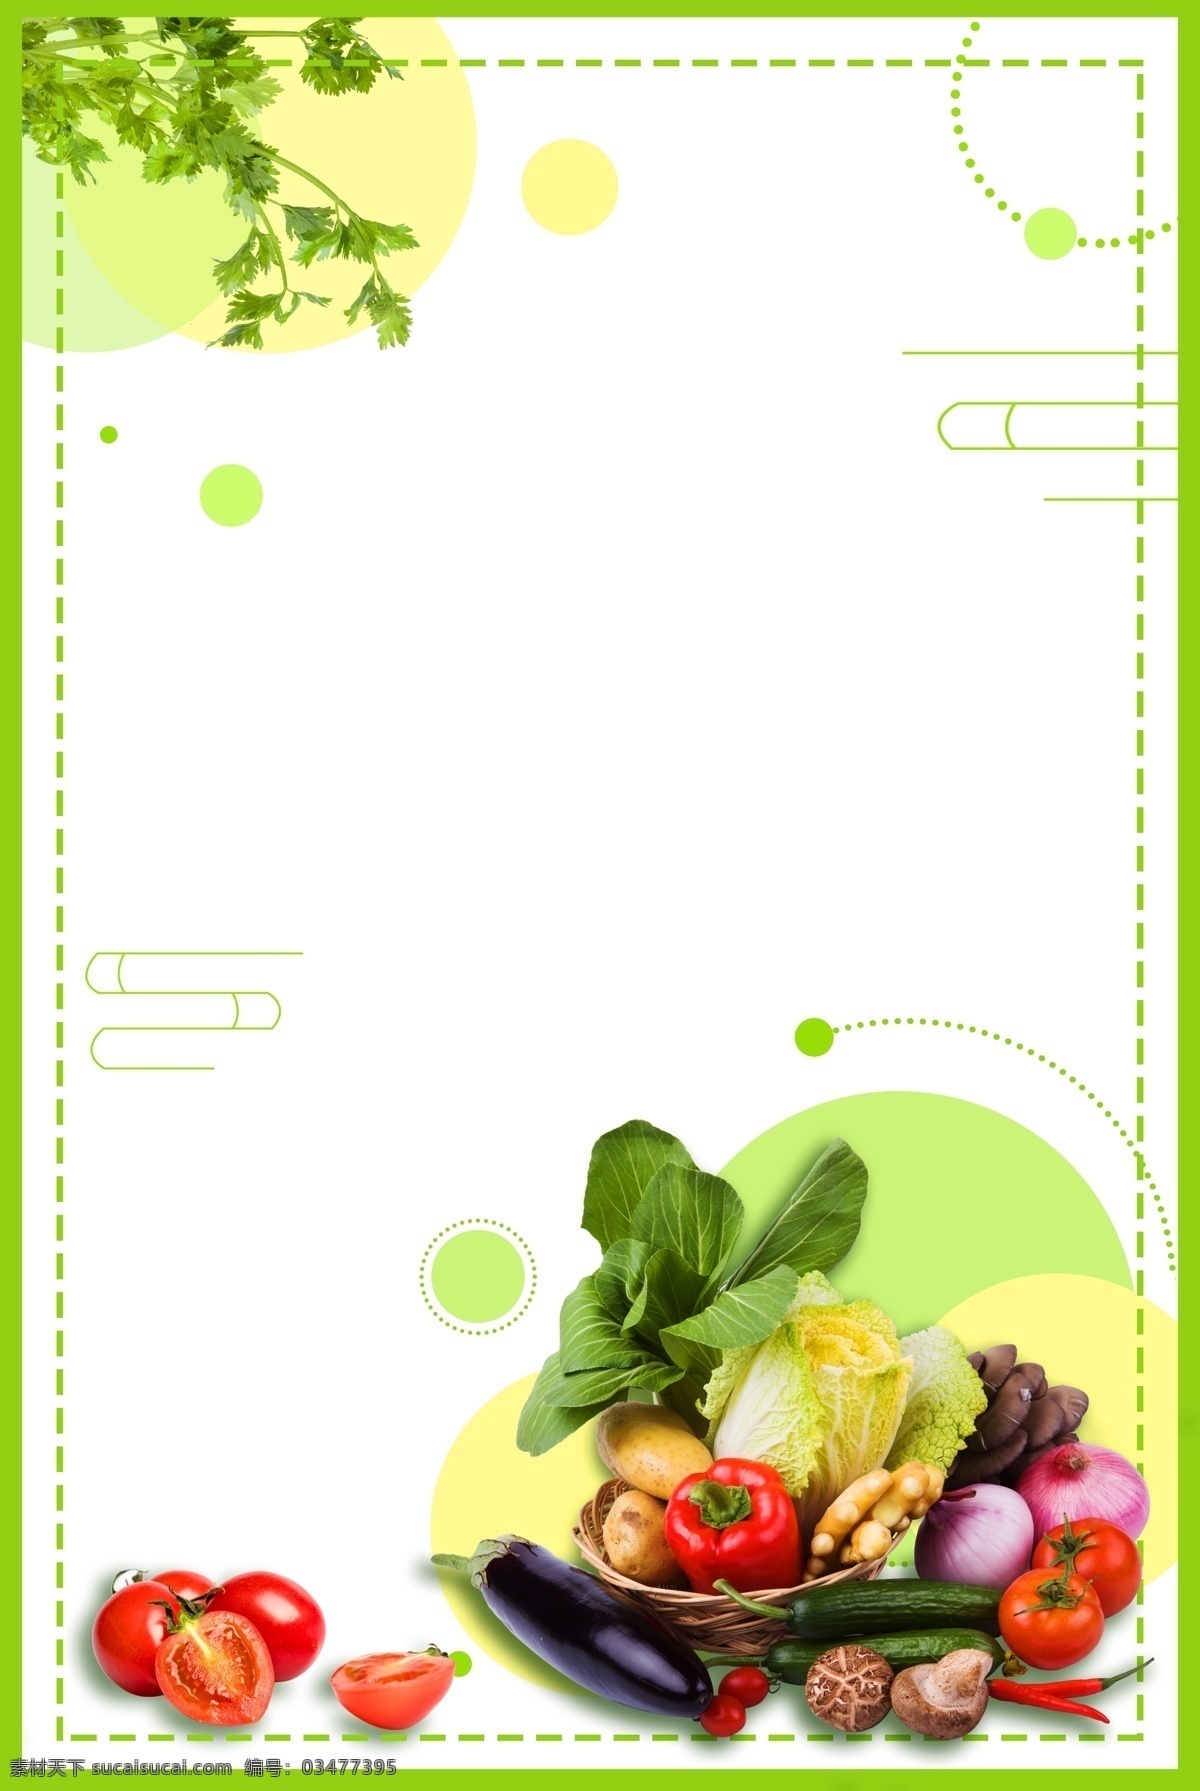 小 清新 绿色 健康 养生 食品 时令 果蔬 蔬菜 小清新 芹菜 西红柿 食品健康 营养